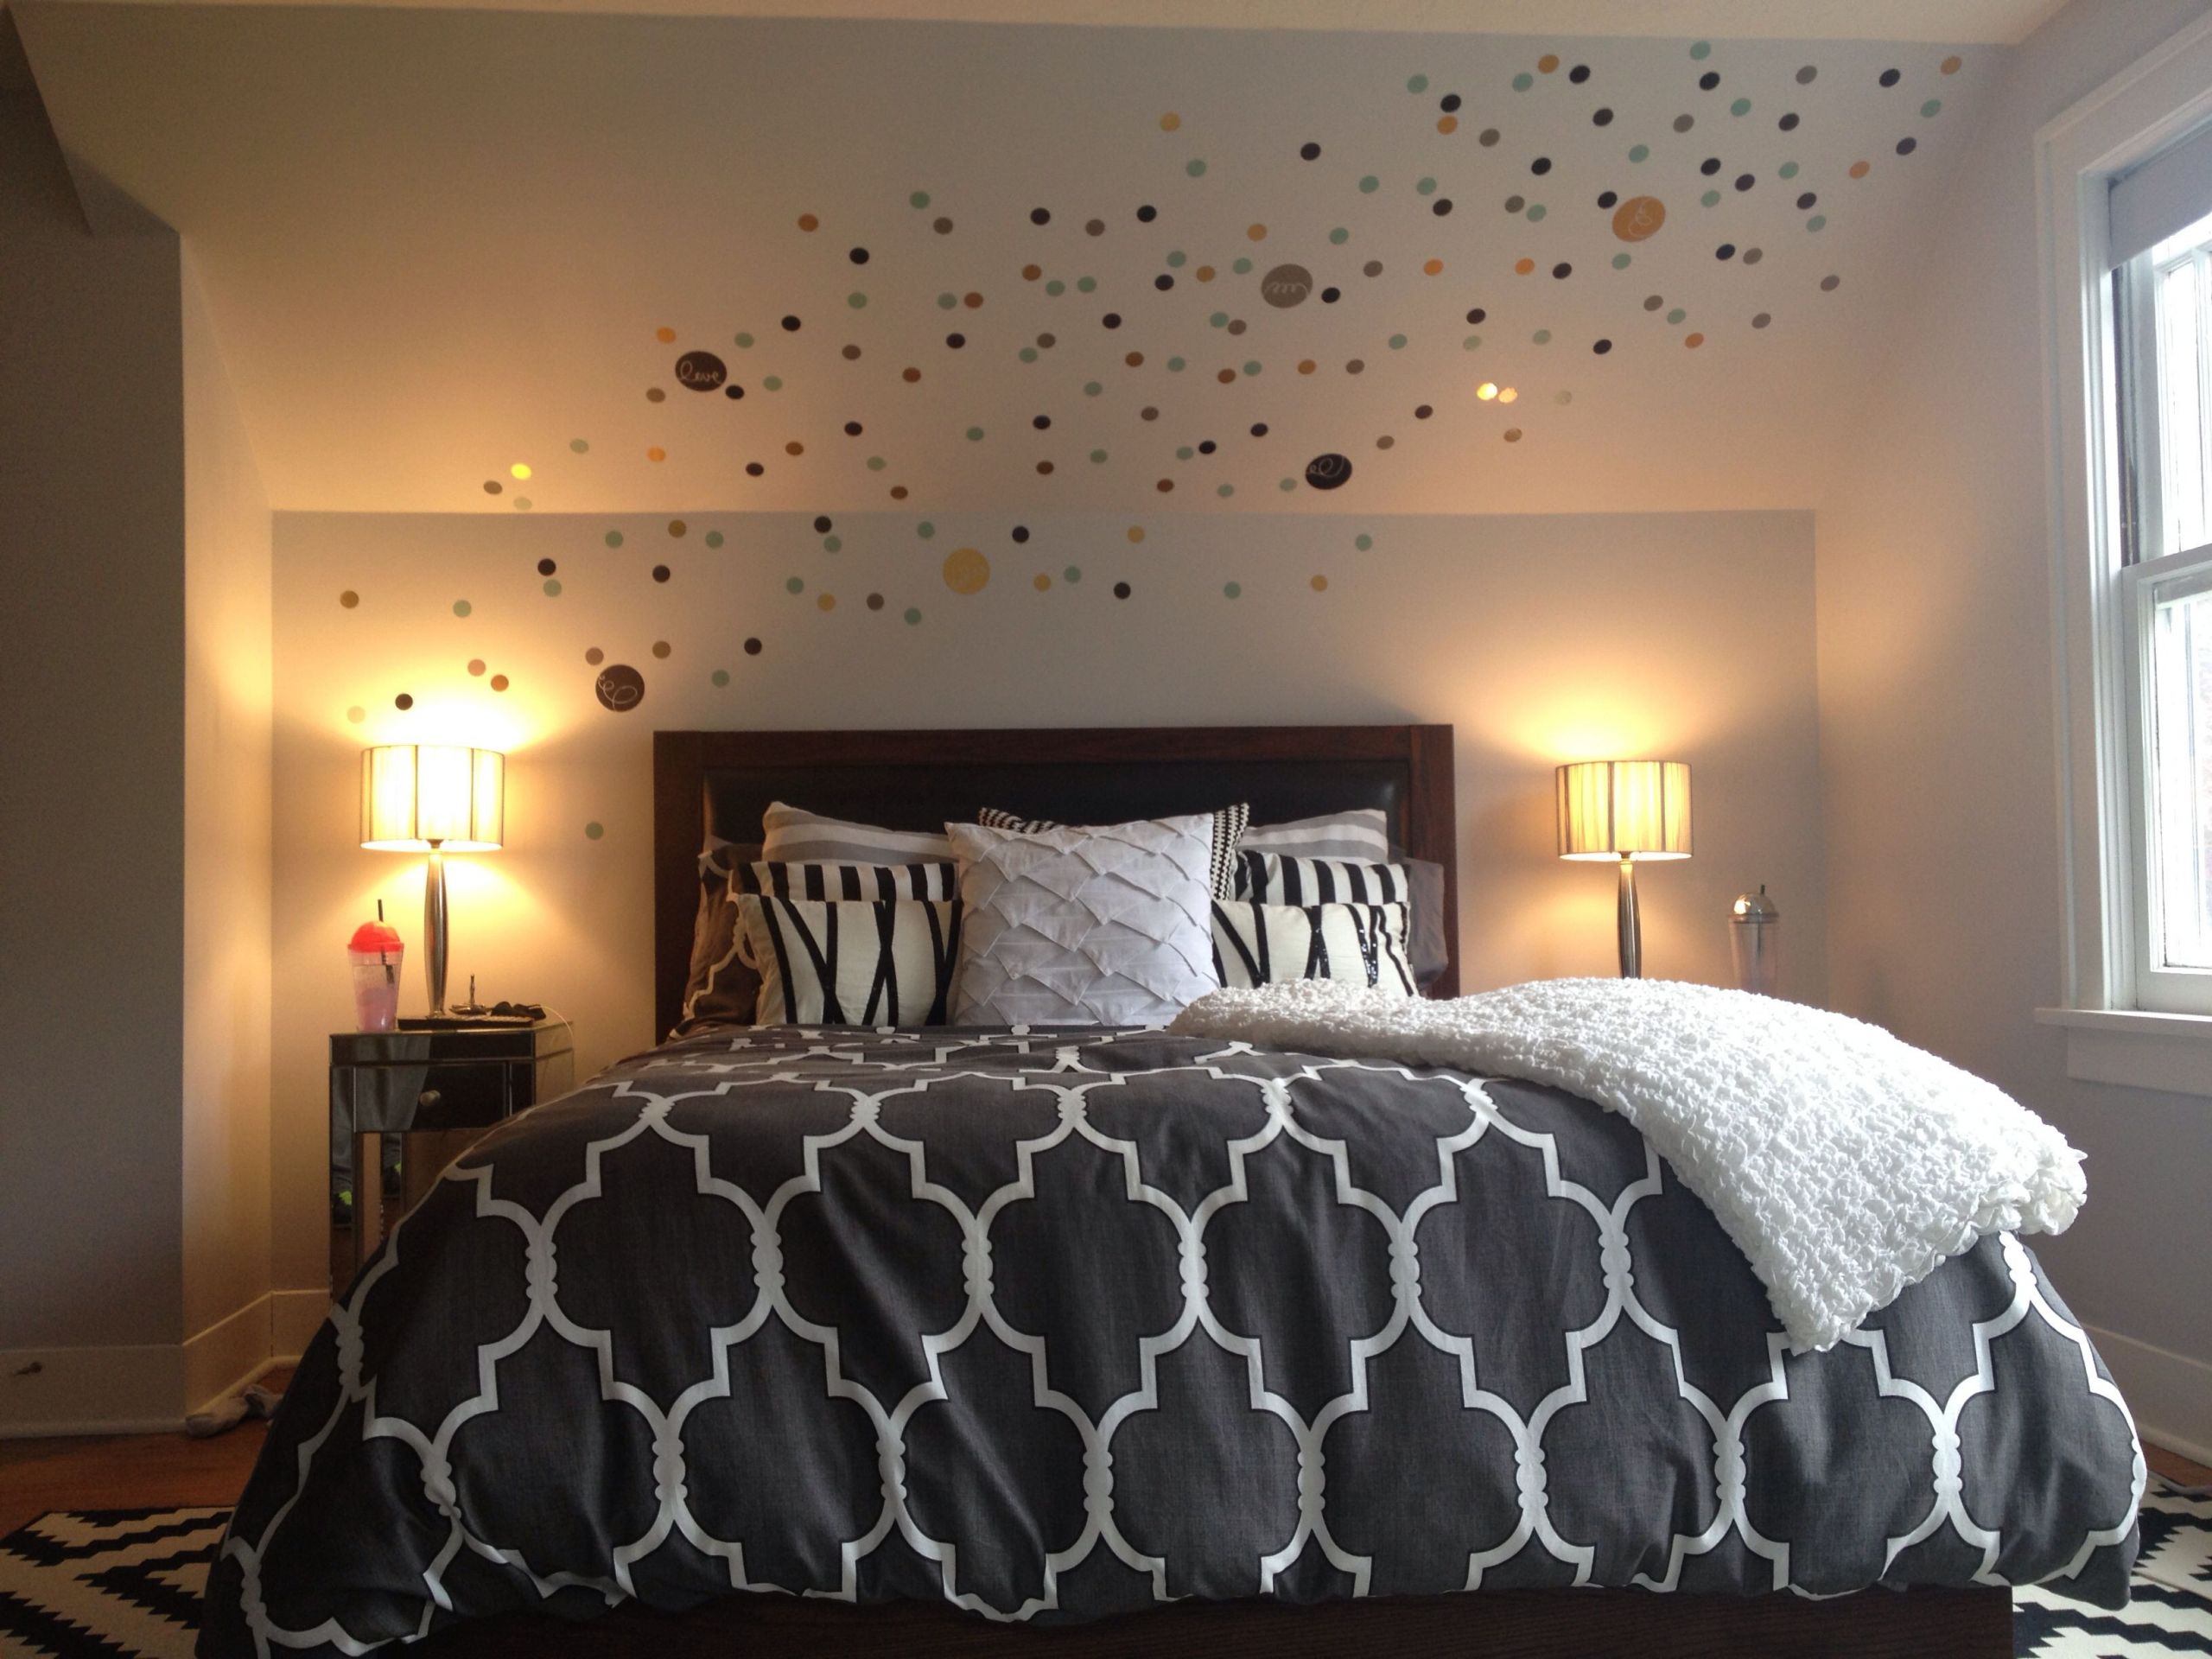 Wall Art Decals For Bedroom
 Master bedroom wall decals